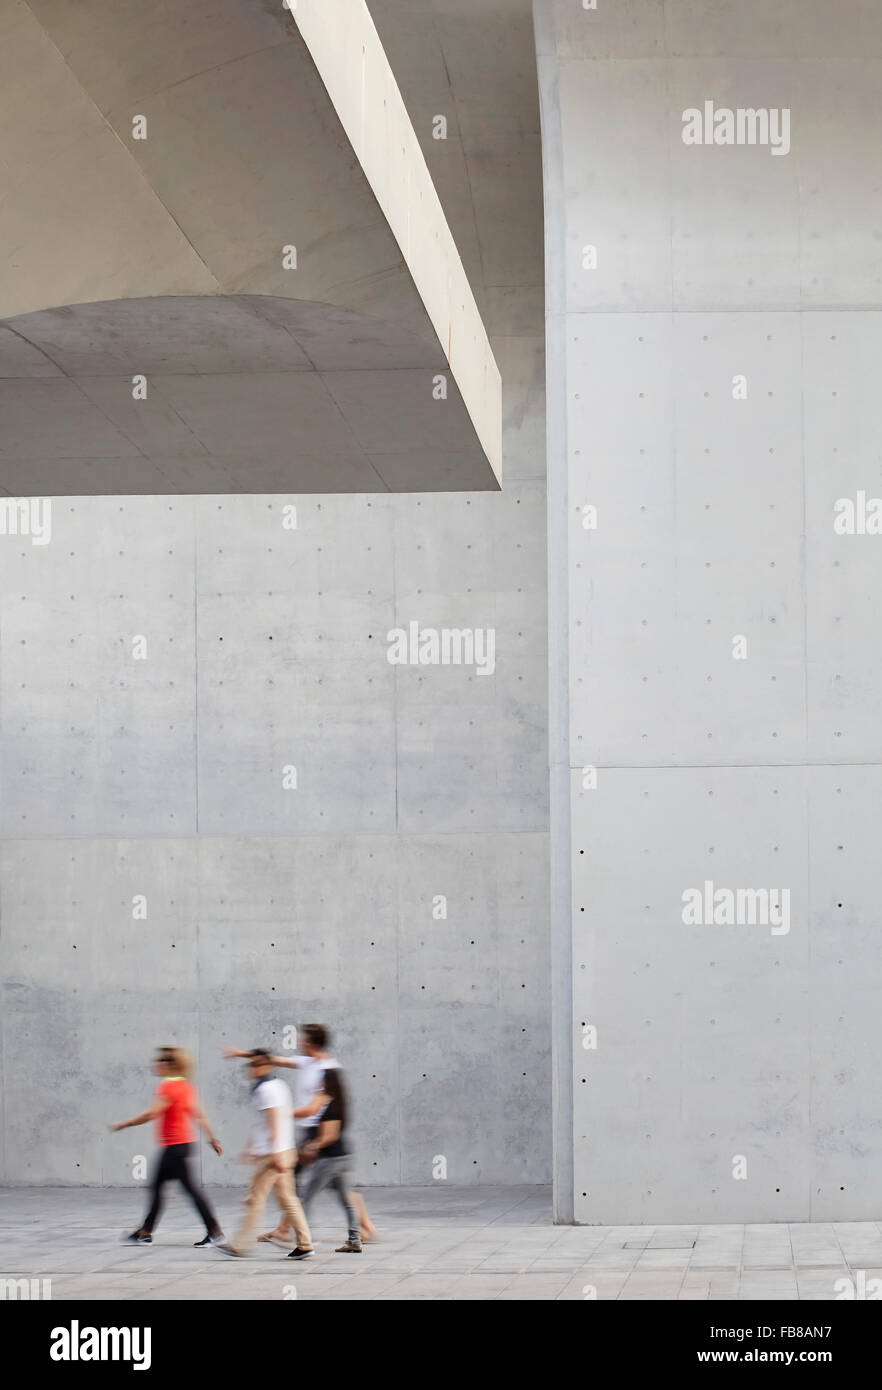 Dettaglio del cast di superfici in calcestruzzo. Museo lungo West Bund, Shanghai, Cina. Architetto: Atelier Deshaus, 2015. Foto Stock